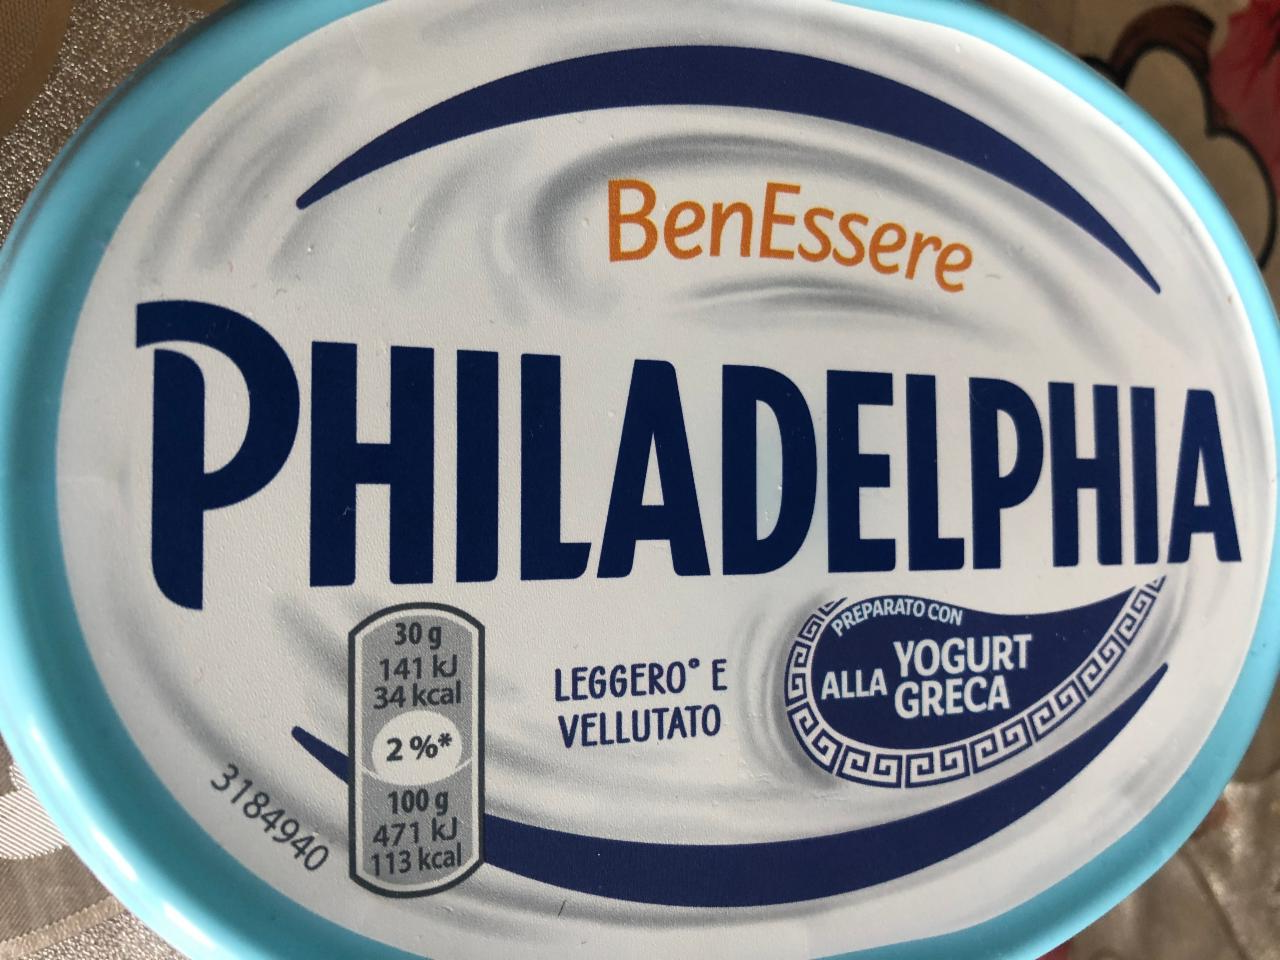 Fotografie - BenEssere Preparato con Yogurt alla Greca Philadelphia